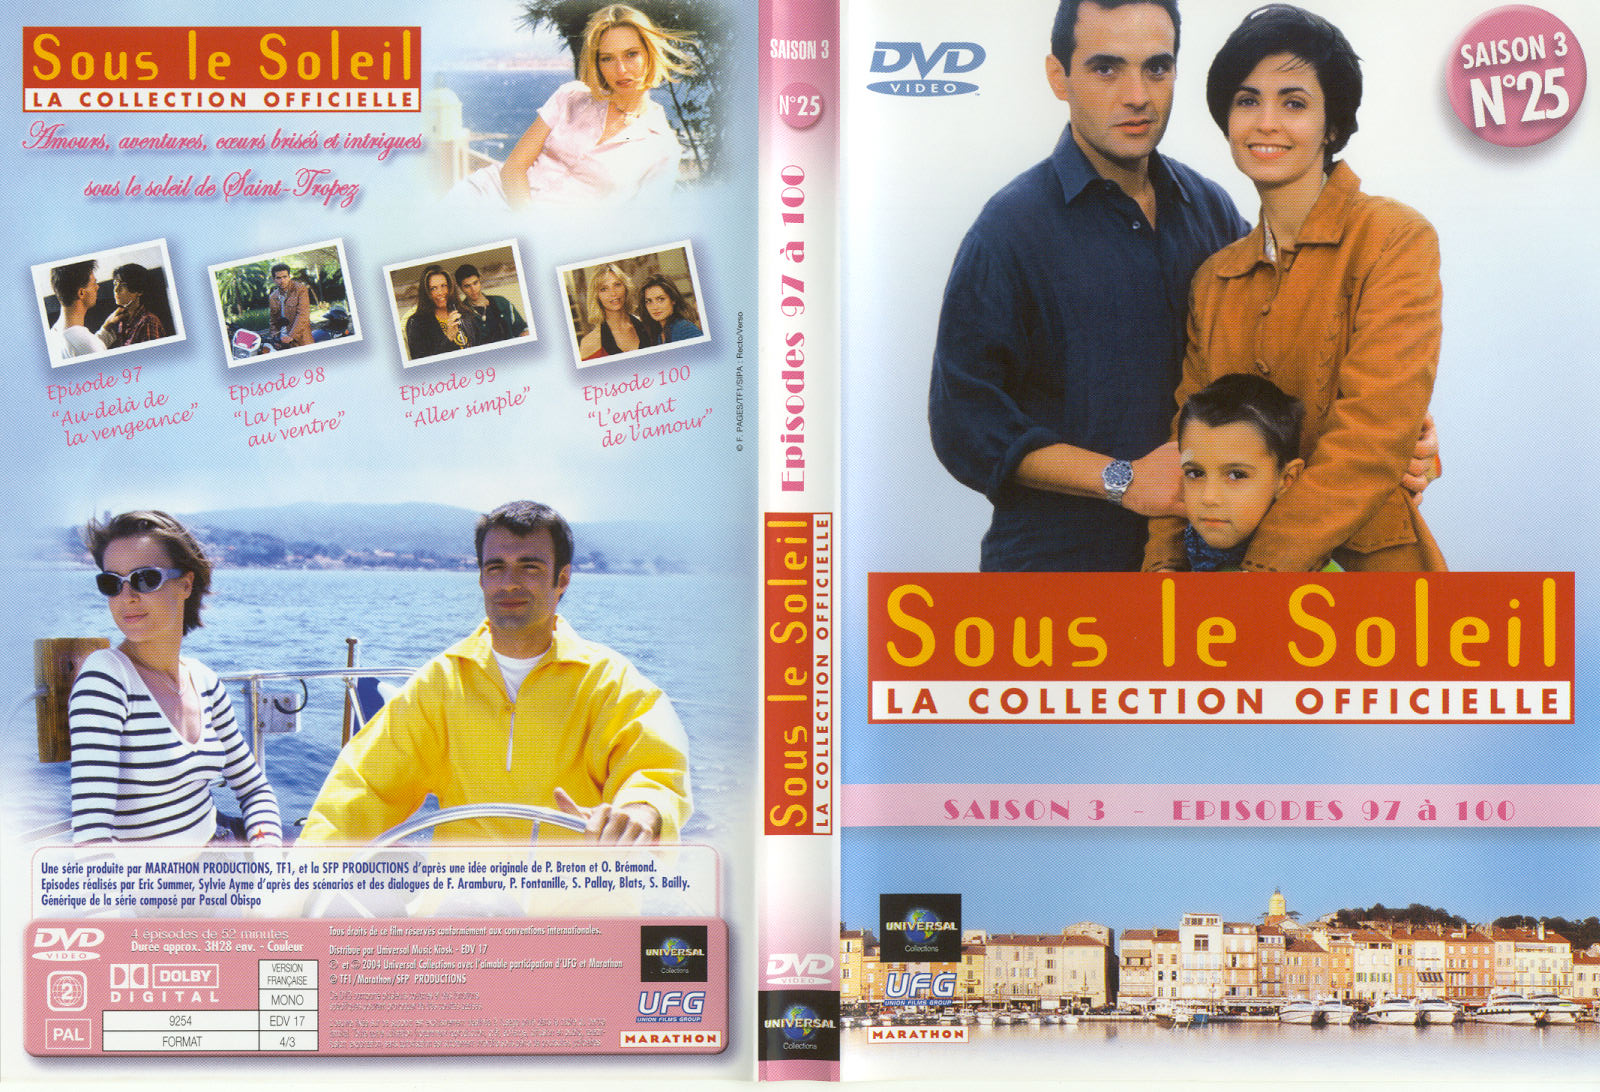 Jaquette DVD Sous le soleil saison 3 vol 25